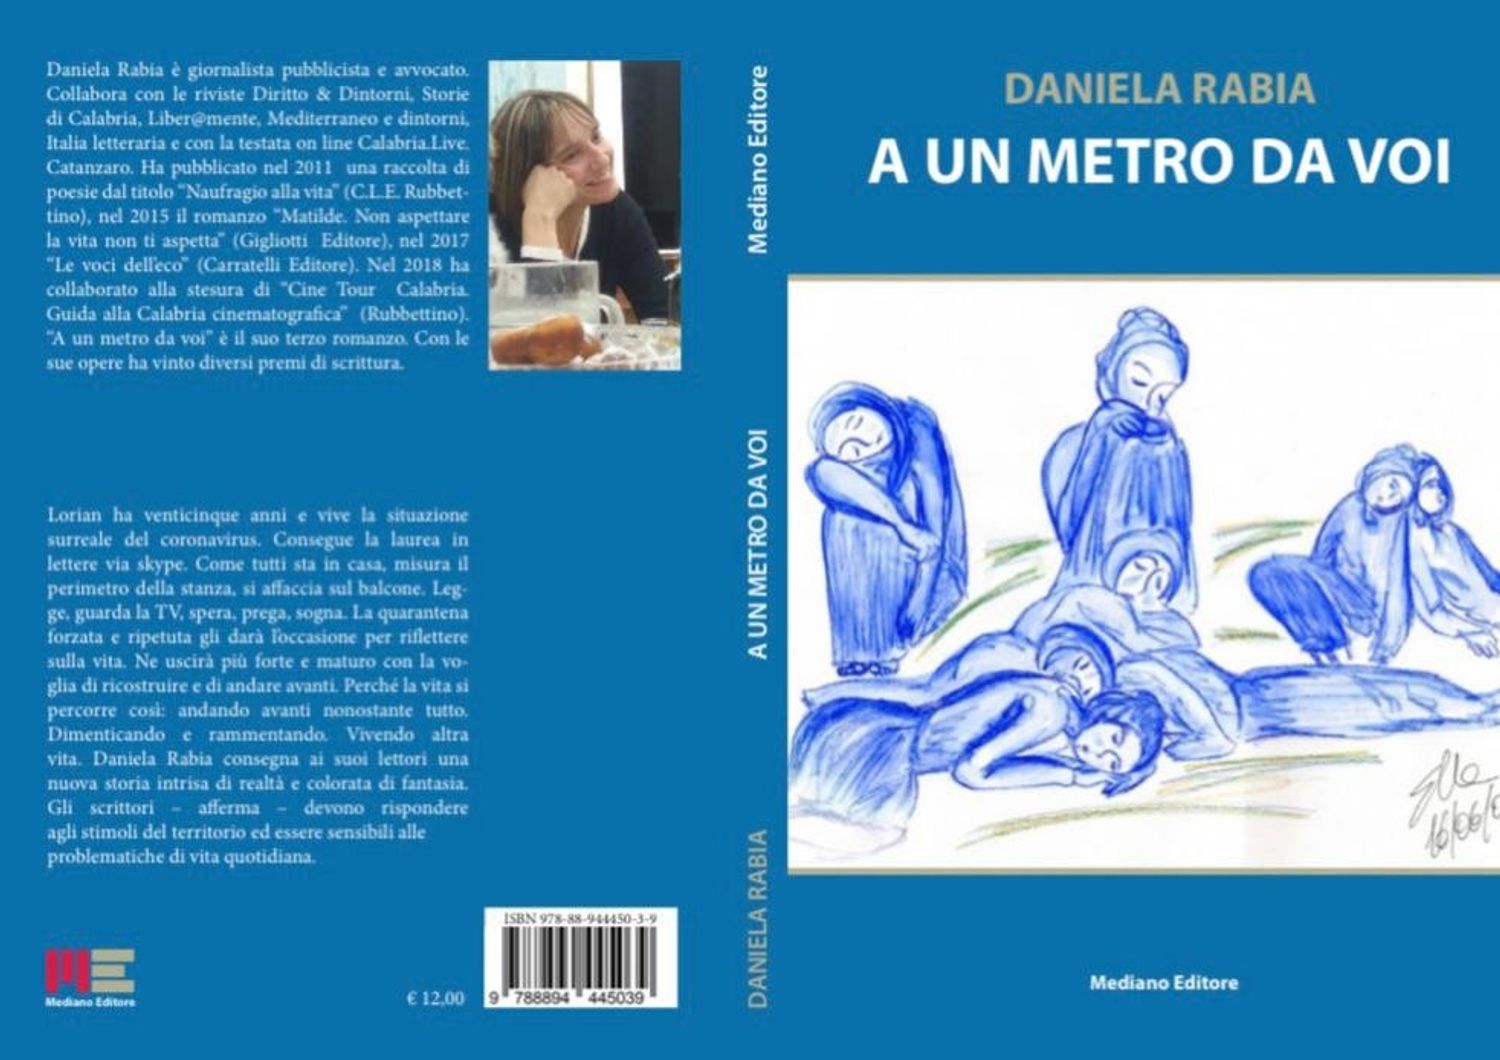 La copertina del nuovo libro di Daniela Rabia